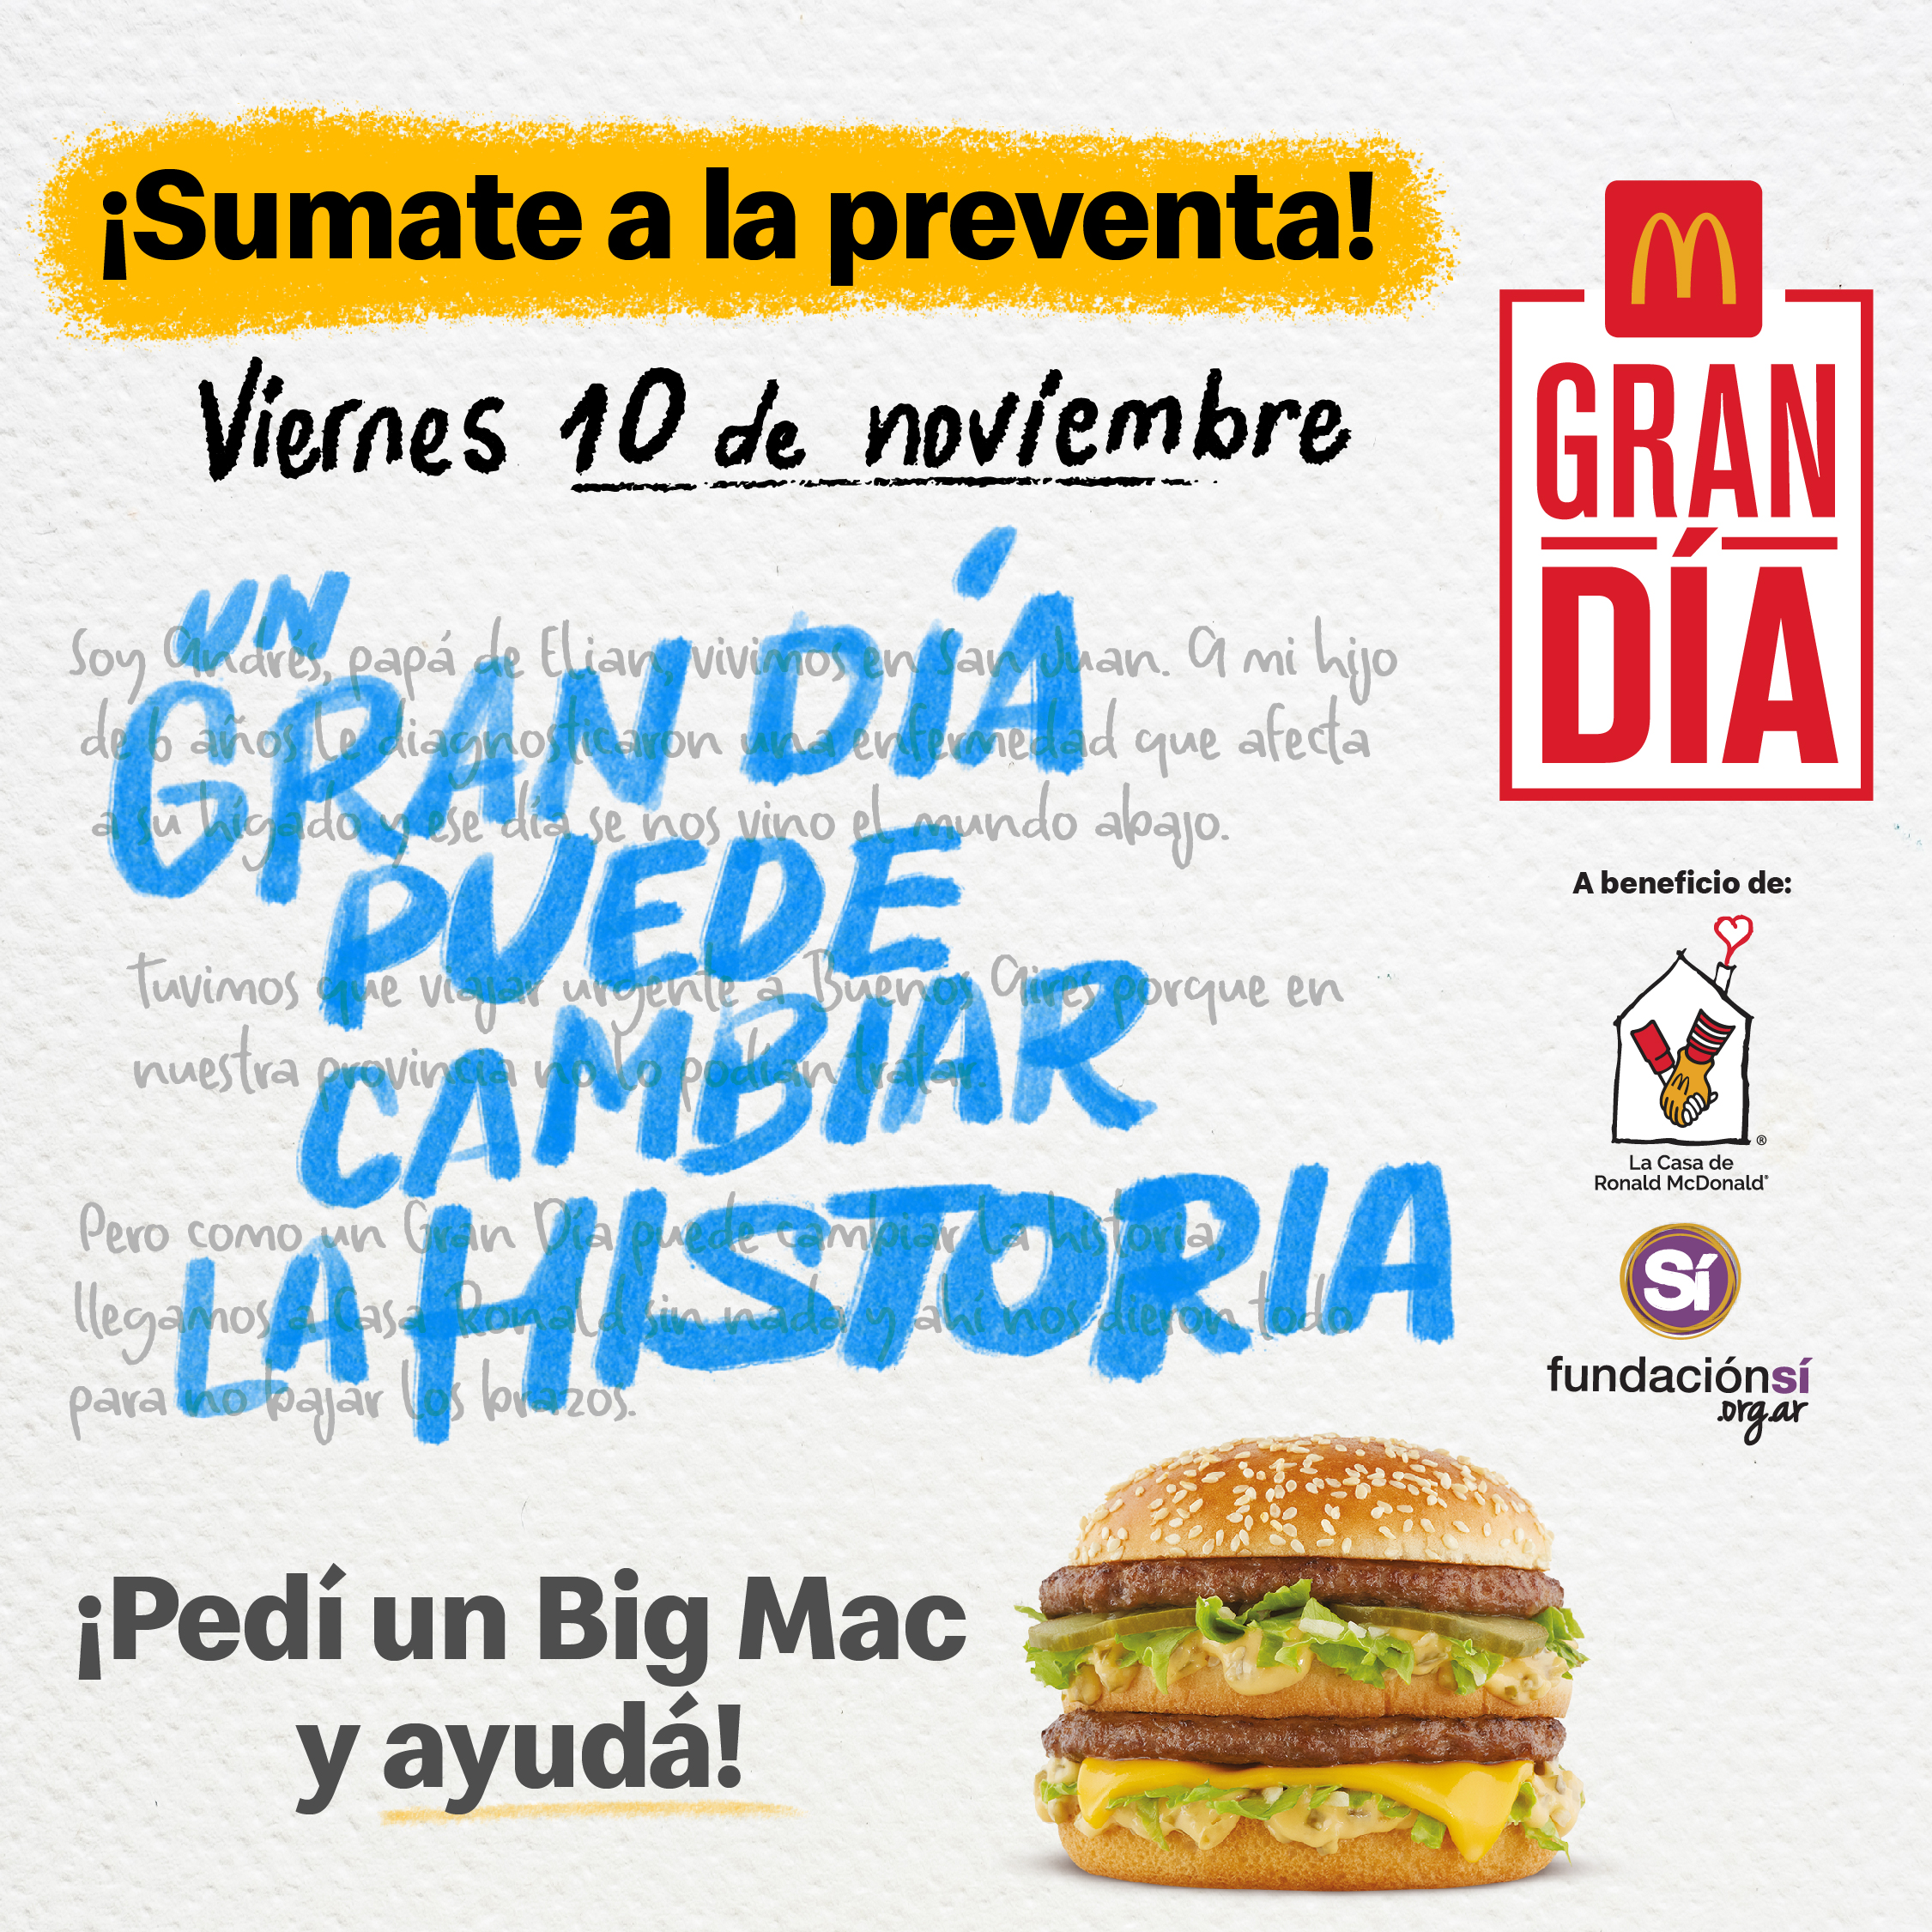 Llega el Gran Día: McDonald’s te invita a participar de la preventa y ayudar a quienes más lo necesitan